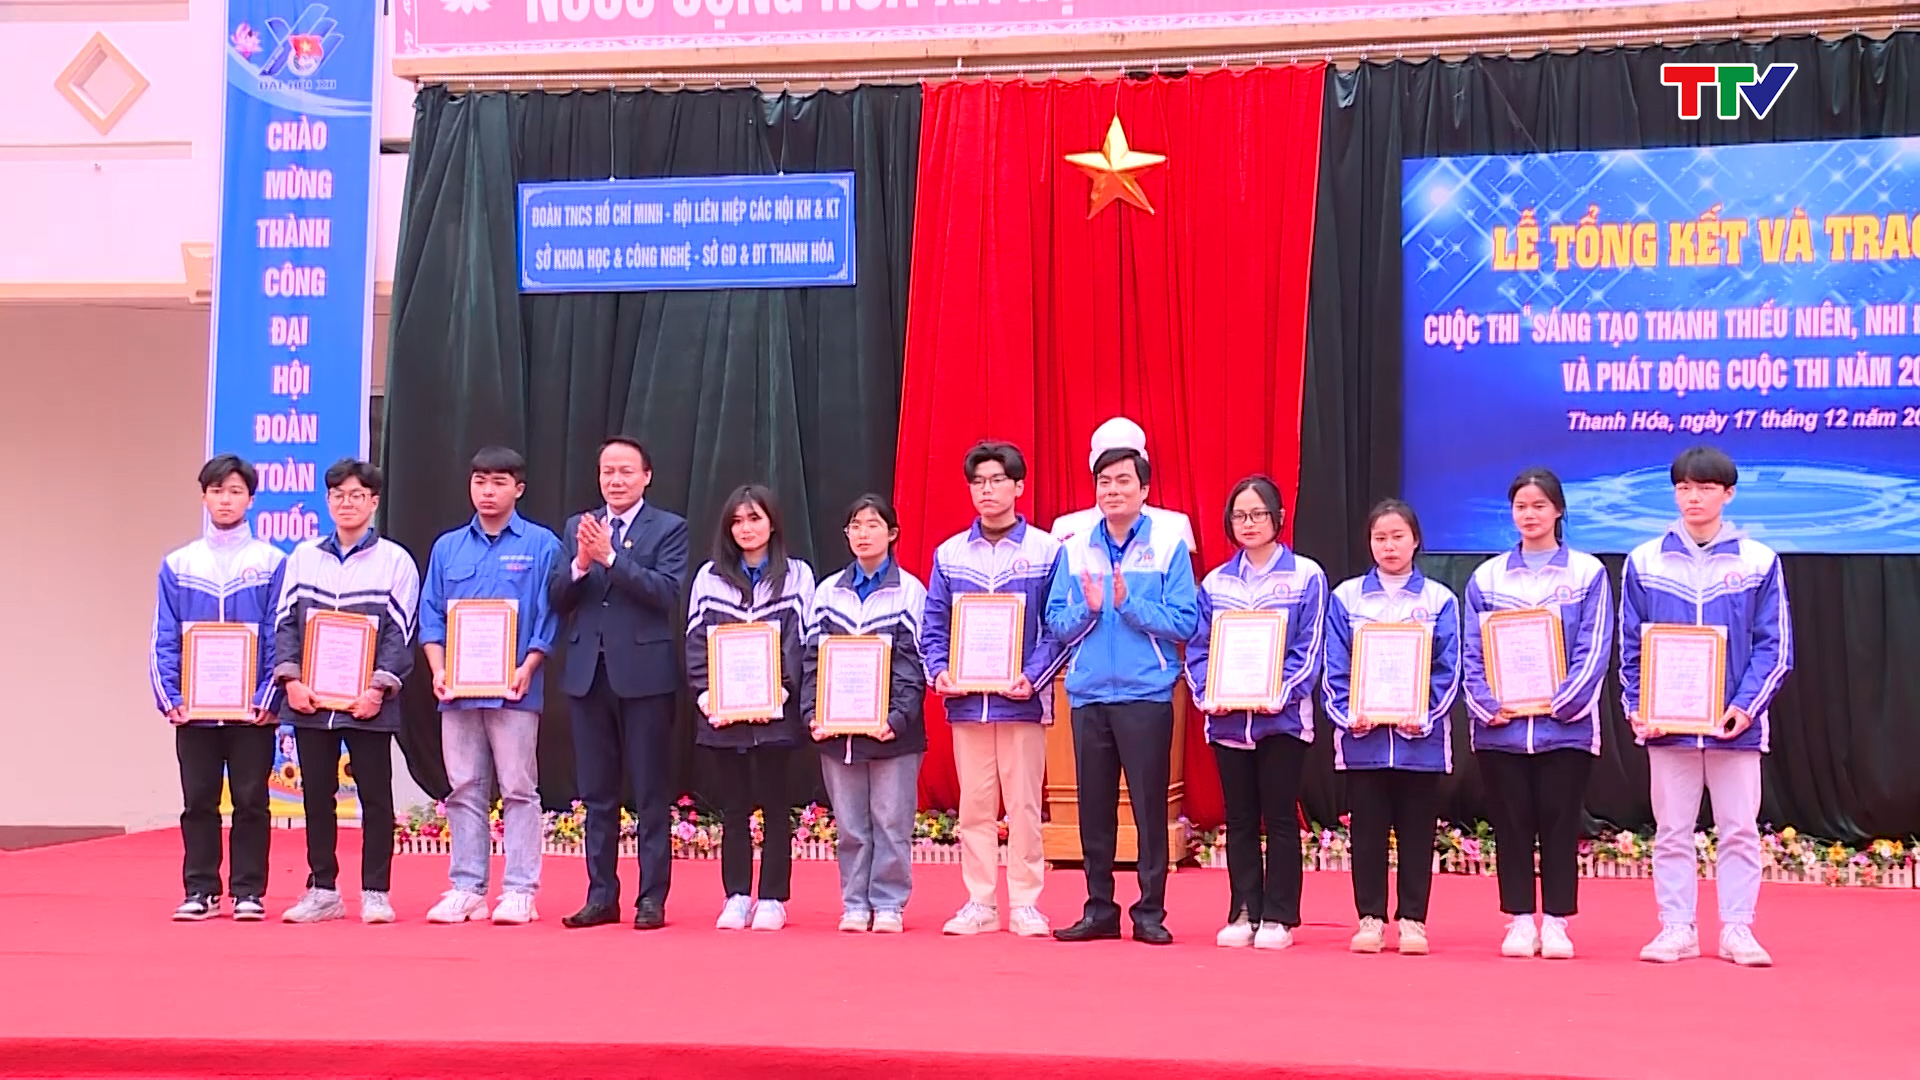 Trao giải Cuộc thi sáng tạo dành cho thanh thiếu niên, nhi đồng, tỉnh Thanh Hóa - Ảnh 2.